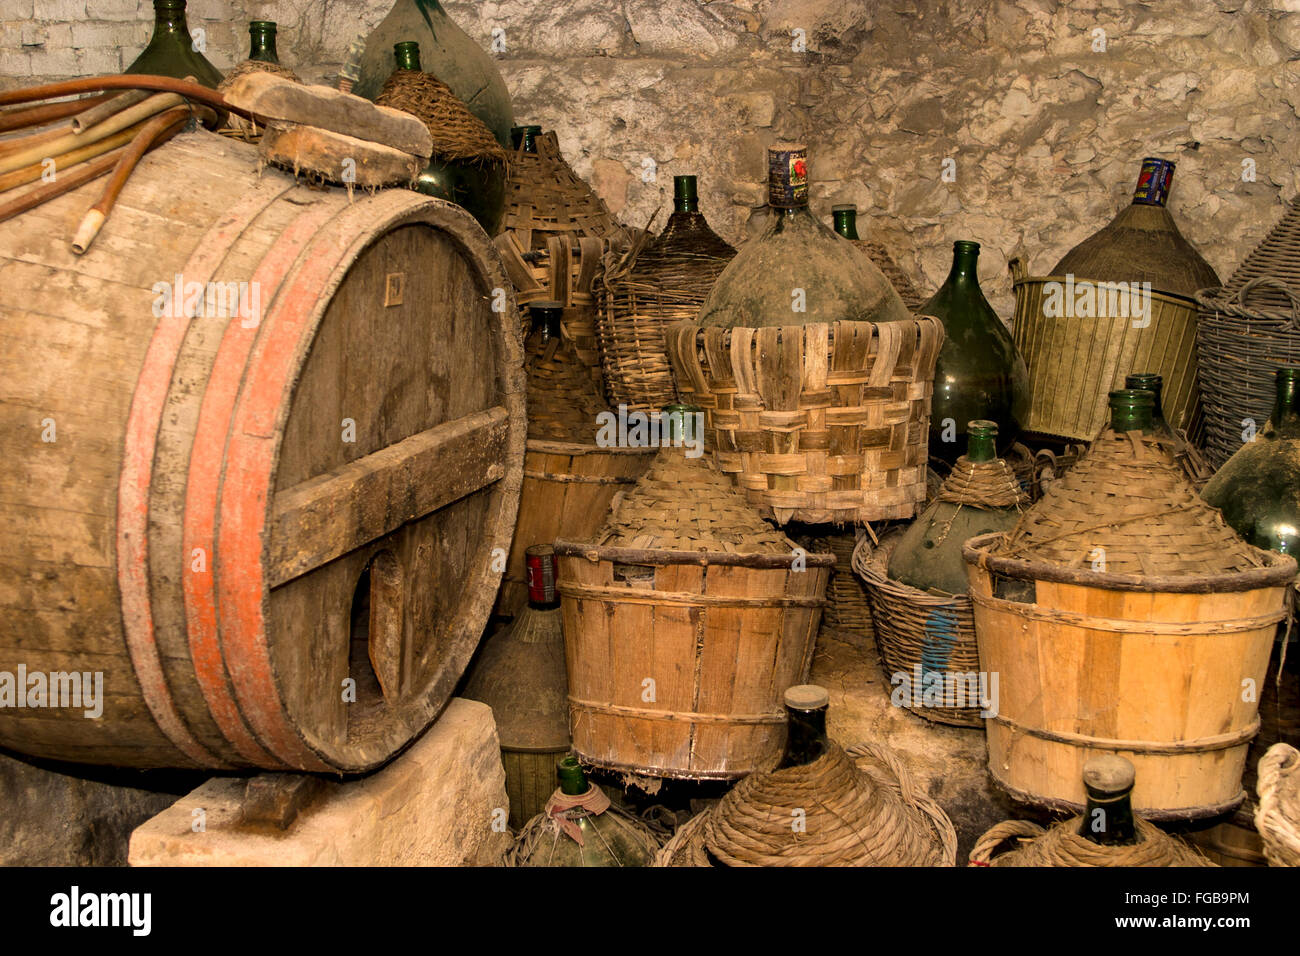 Vecchie bottiglie e botti di vino rinvenute nel seminterrato di un rifugio di caccia costruito nel 1500 d.C., Toscana Italia.» Foto Stock